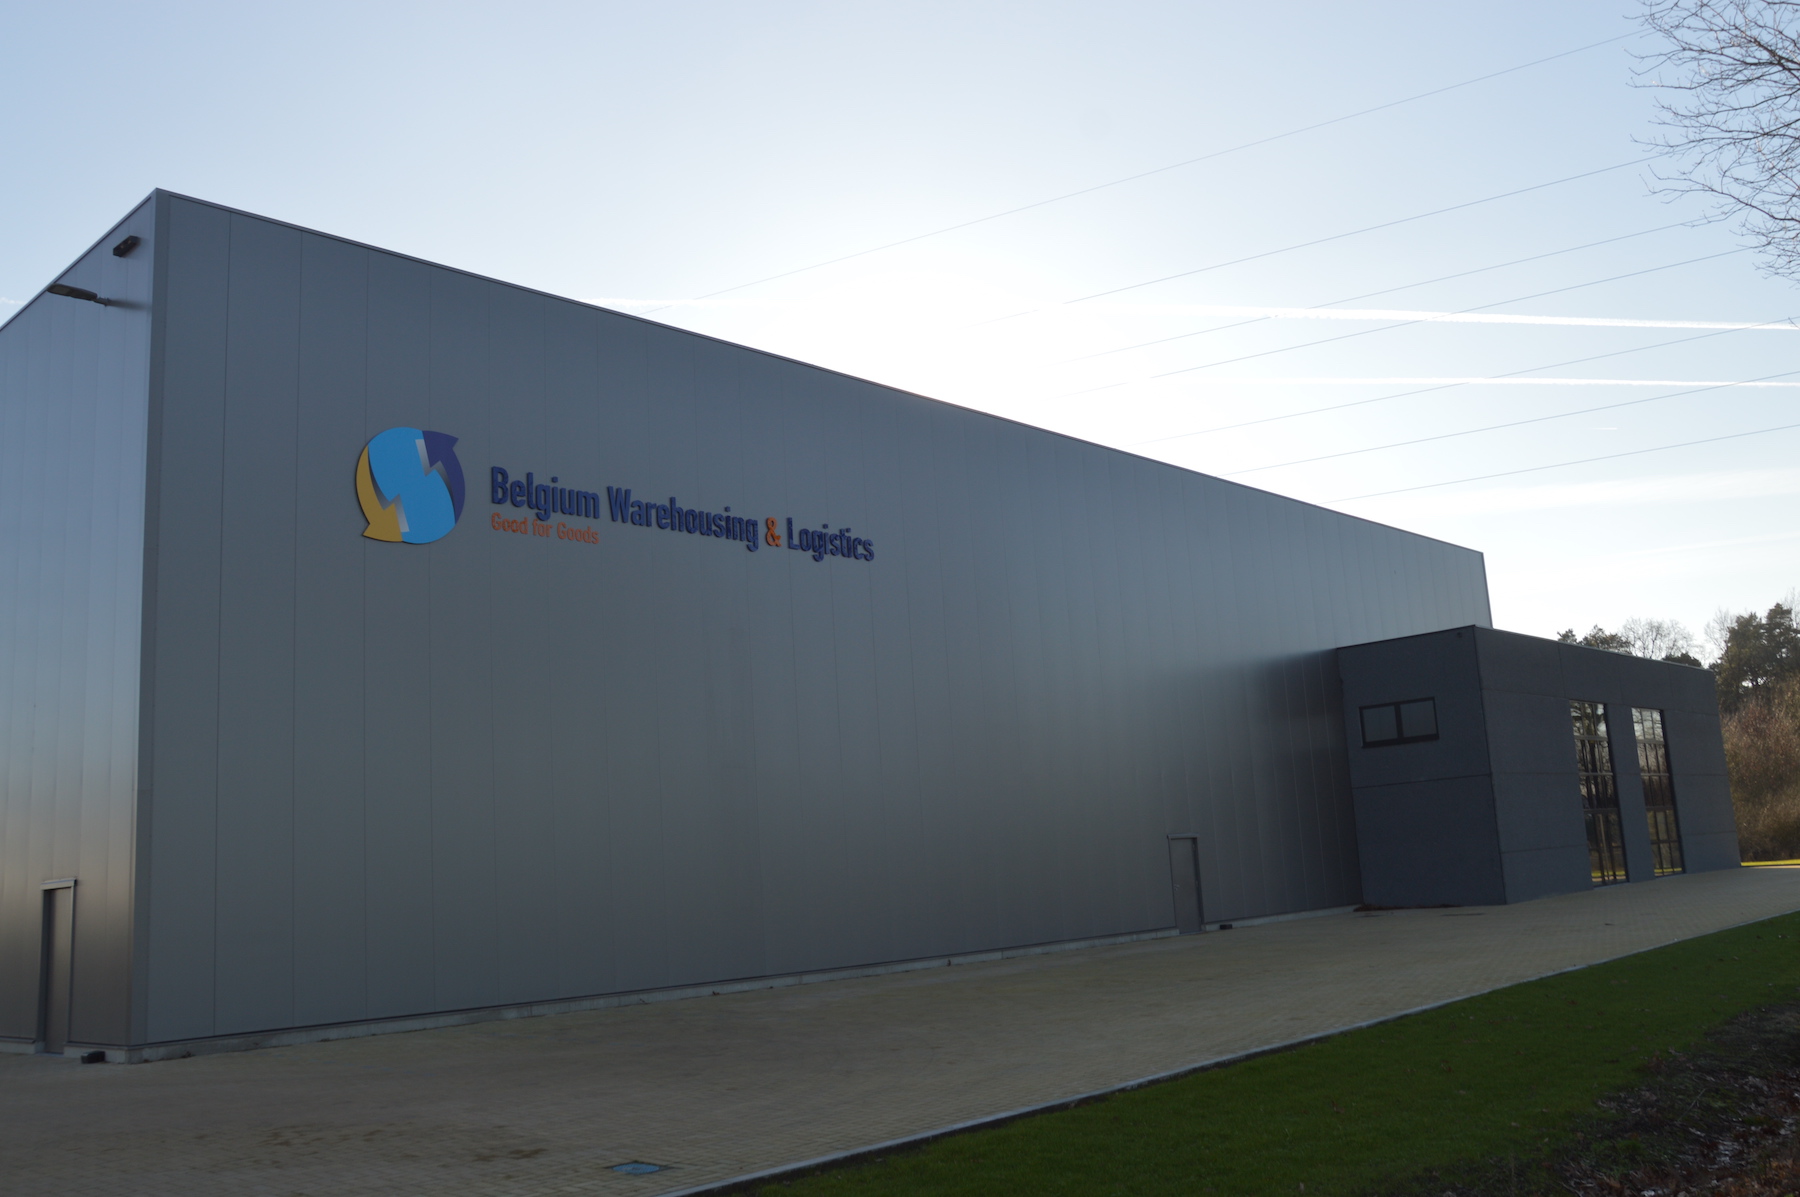 Belgium Warehousing & Logistics